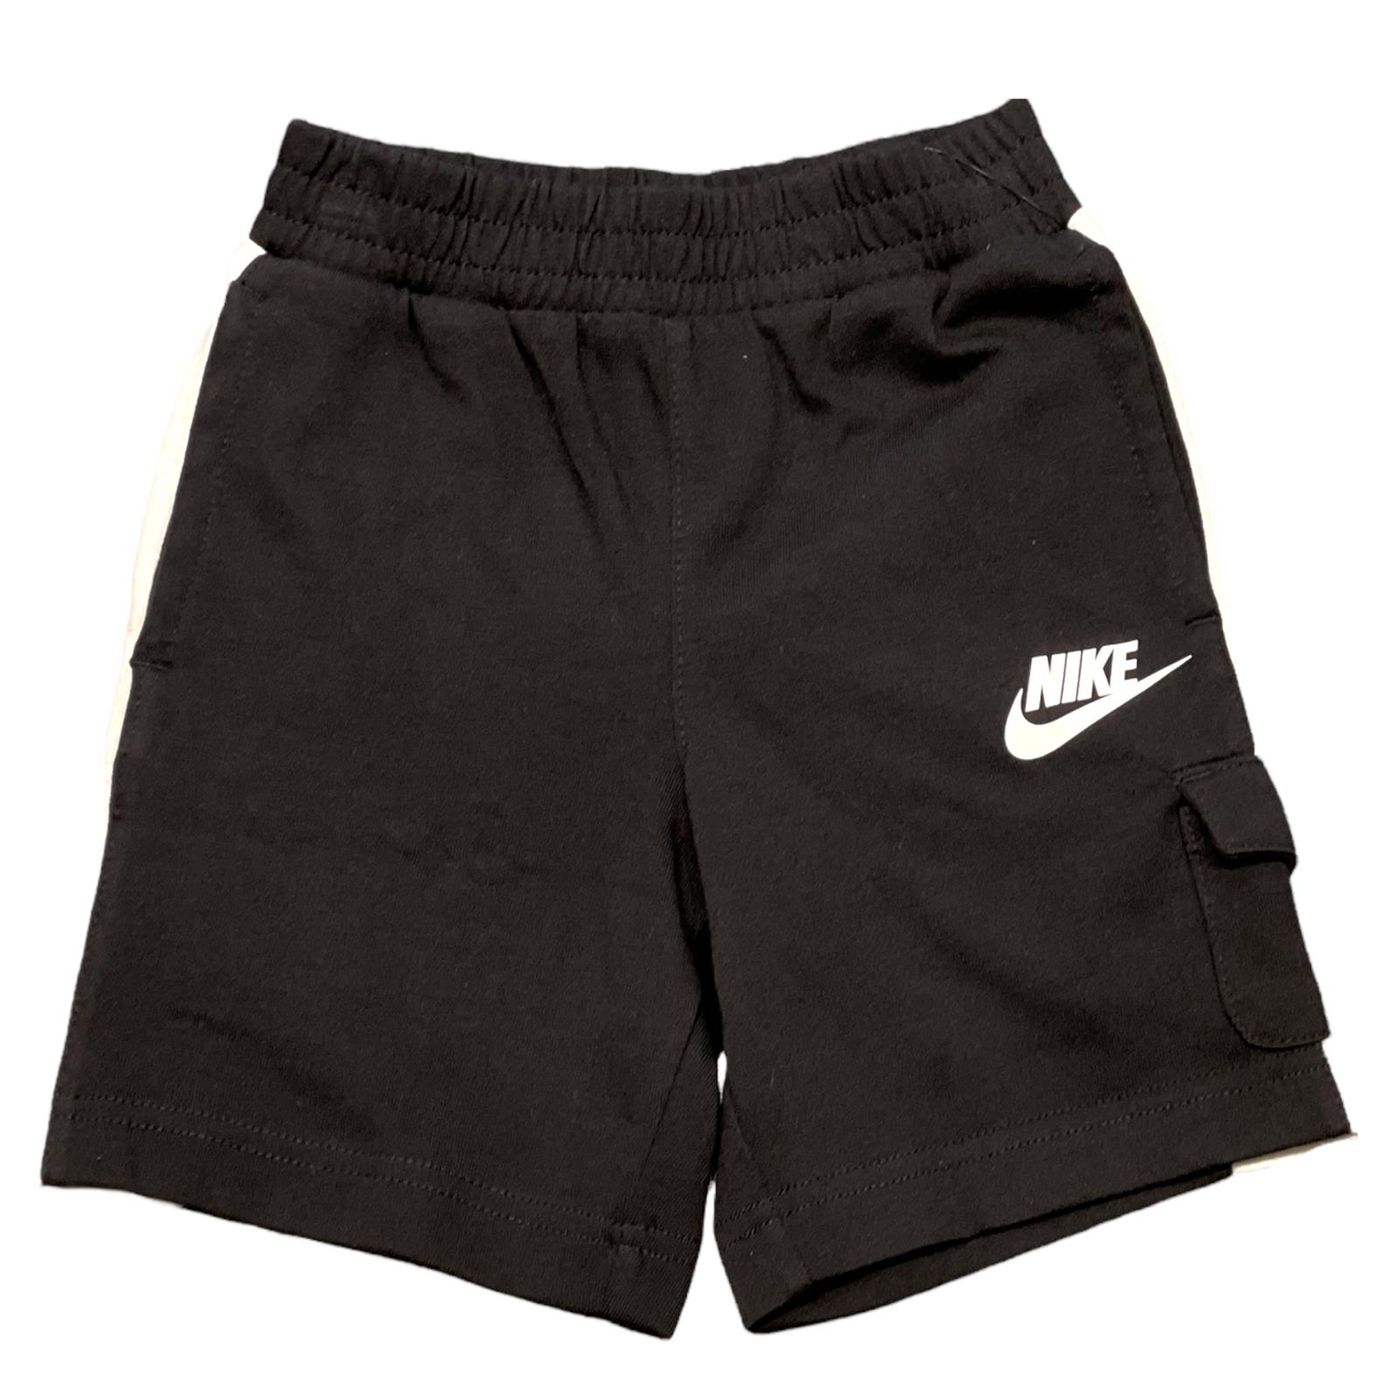 86J619-023 - Shorts - Nike